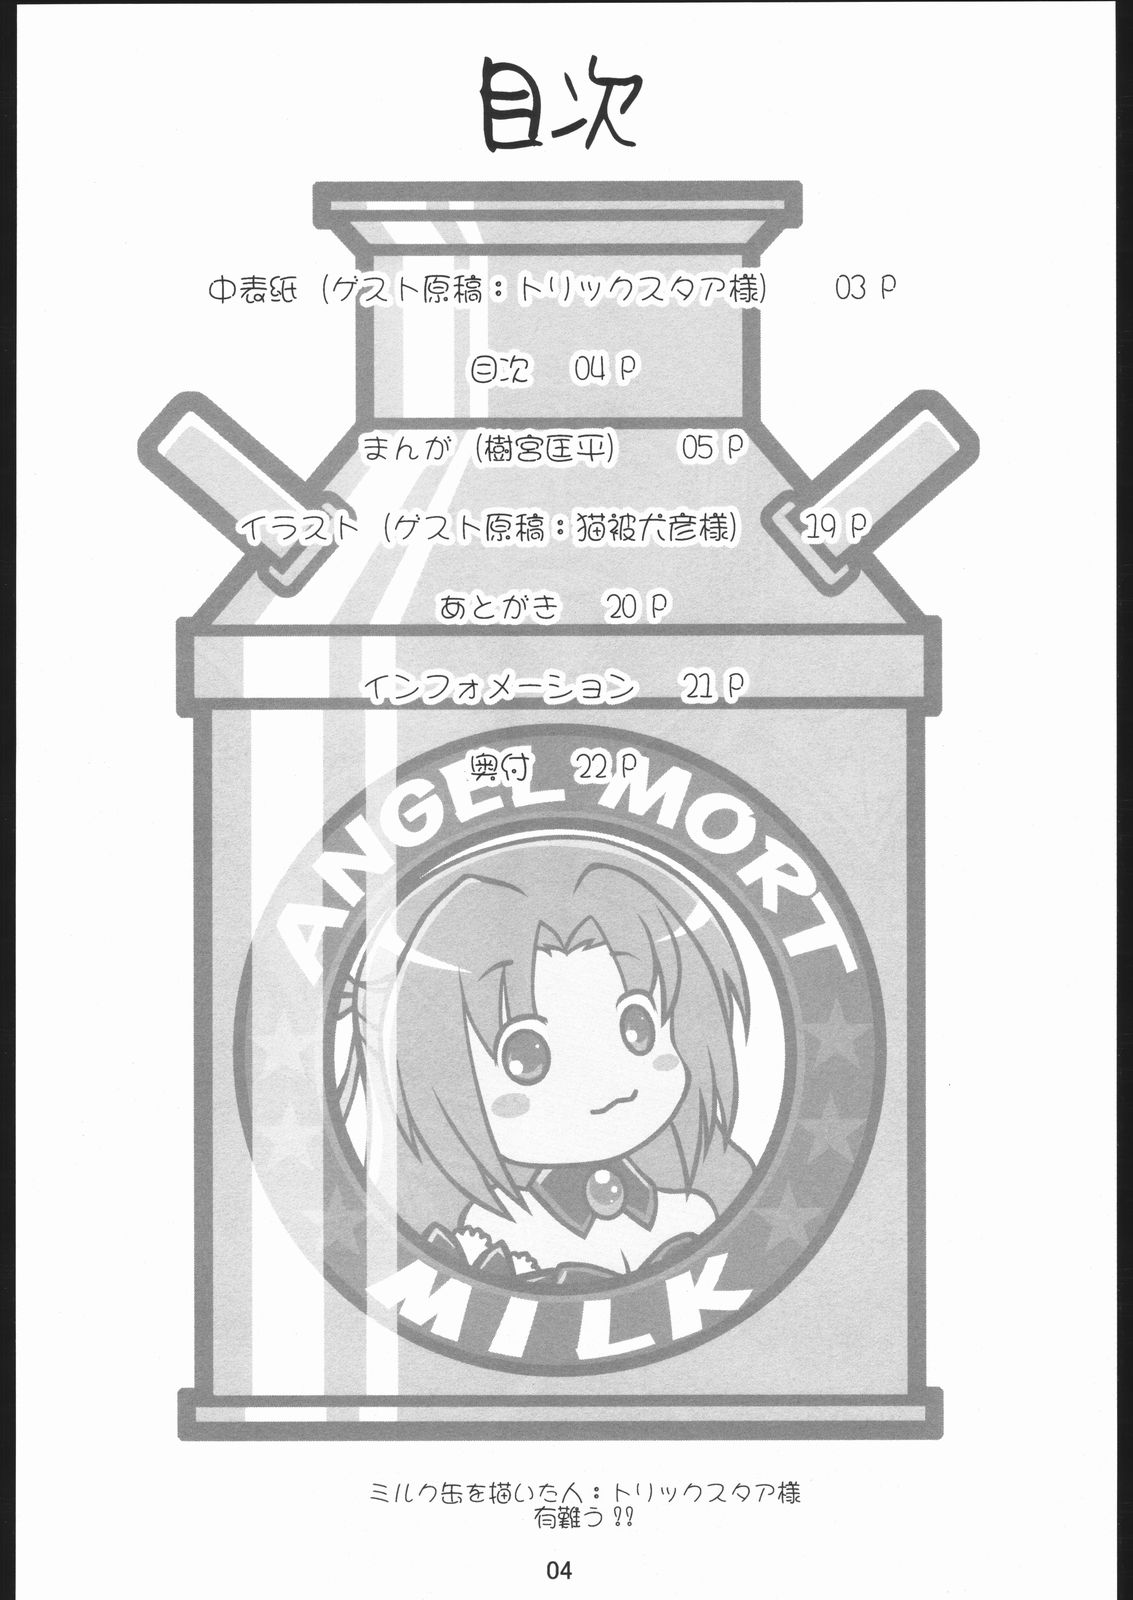 [IIWAKE-GAISYA (Shigemiya Kyouhei)] Tokunou Milk Shibori (Higurashi no naku koro ni [When They Cry - Higurashi]) [C68 Ad] [いいわけ会社 (樹宮匡平)] 特濃みるくしぼり (ひぐらしのなく頃に) [C68広告]